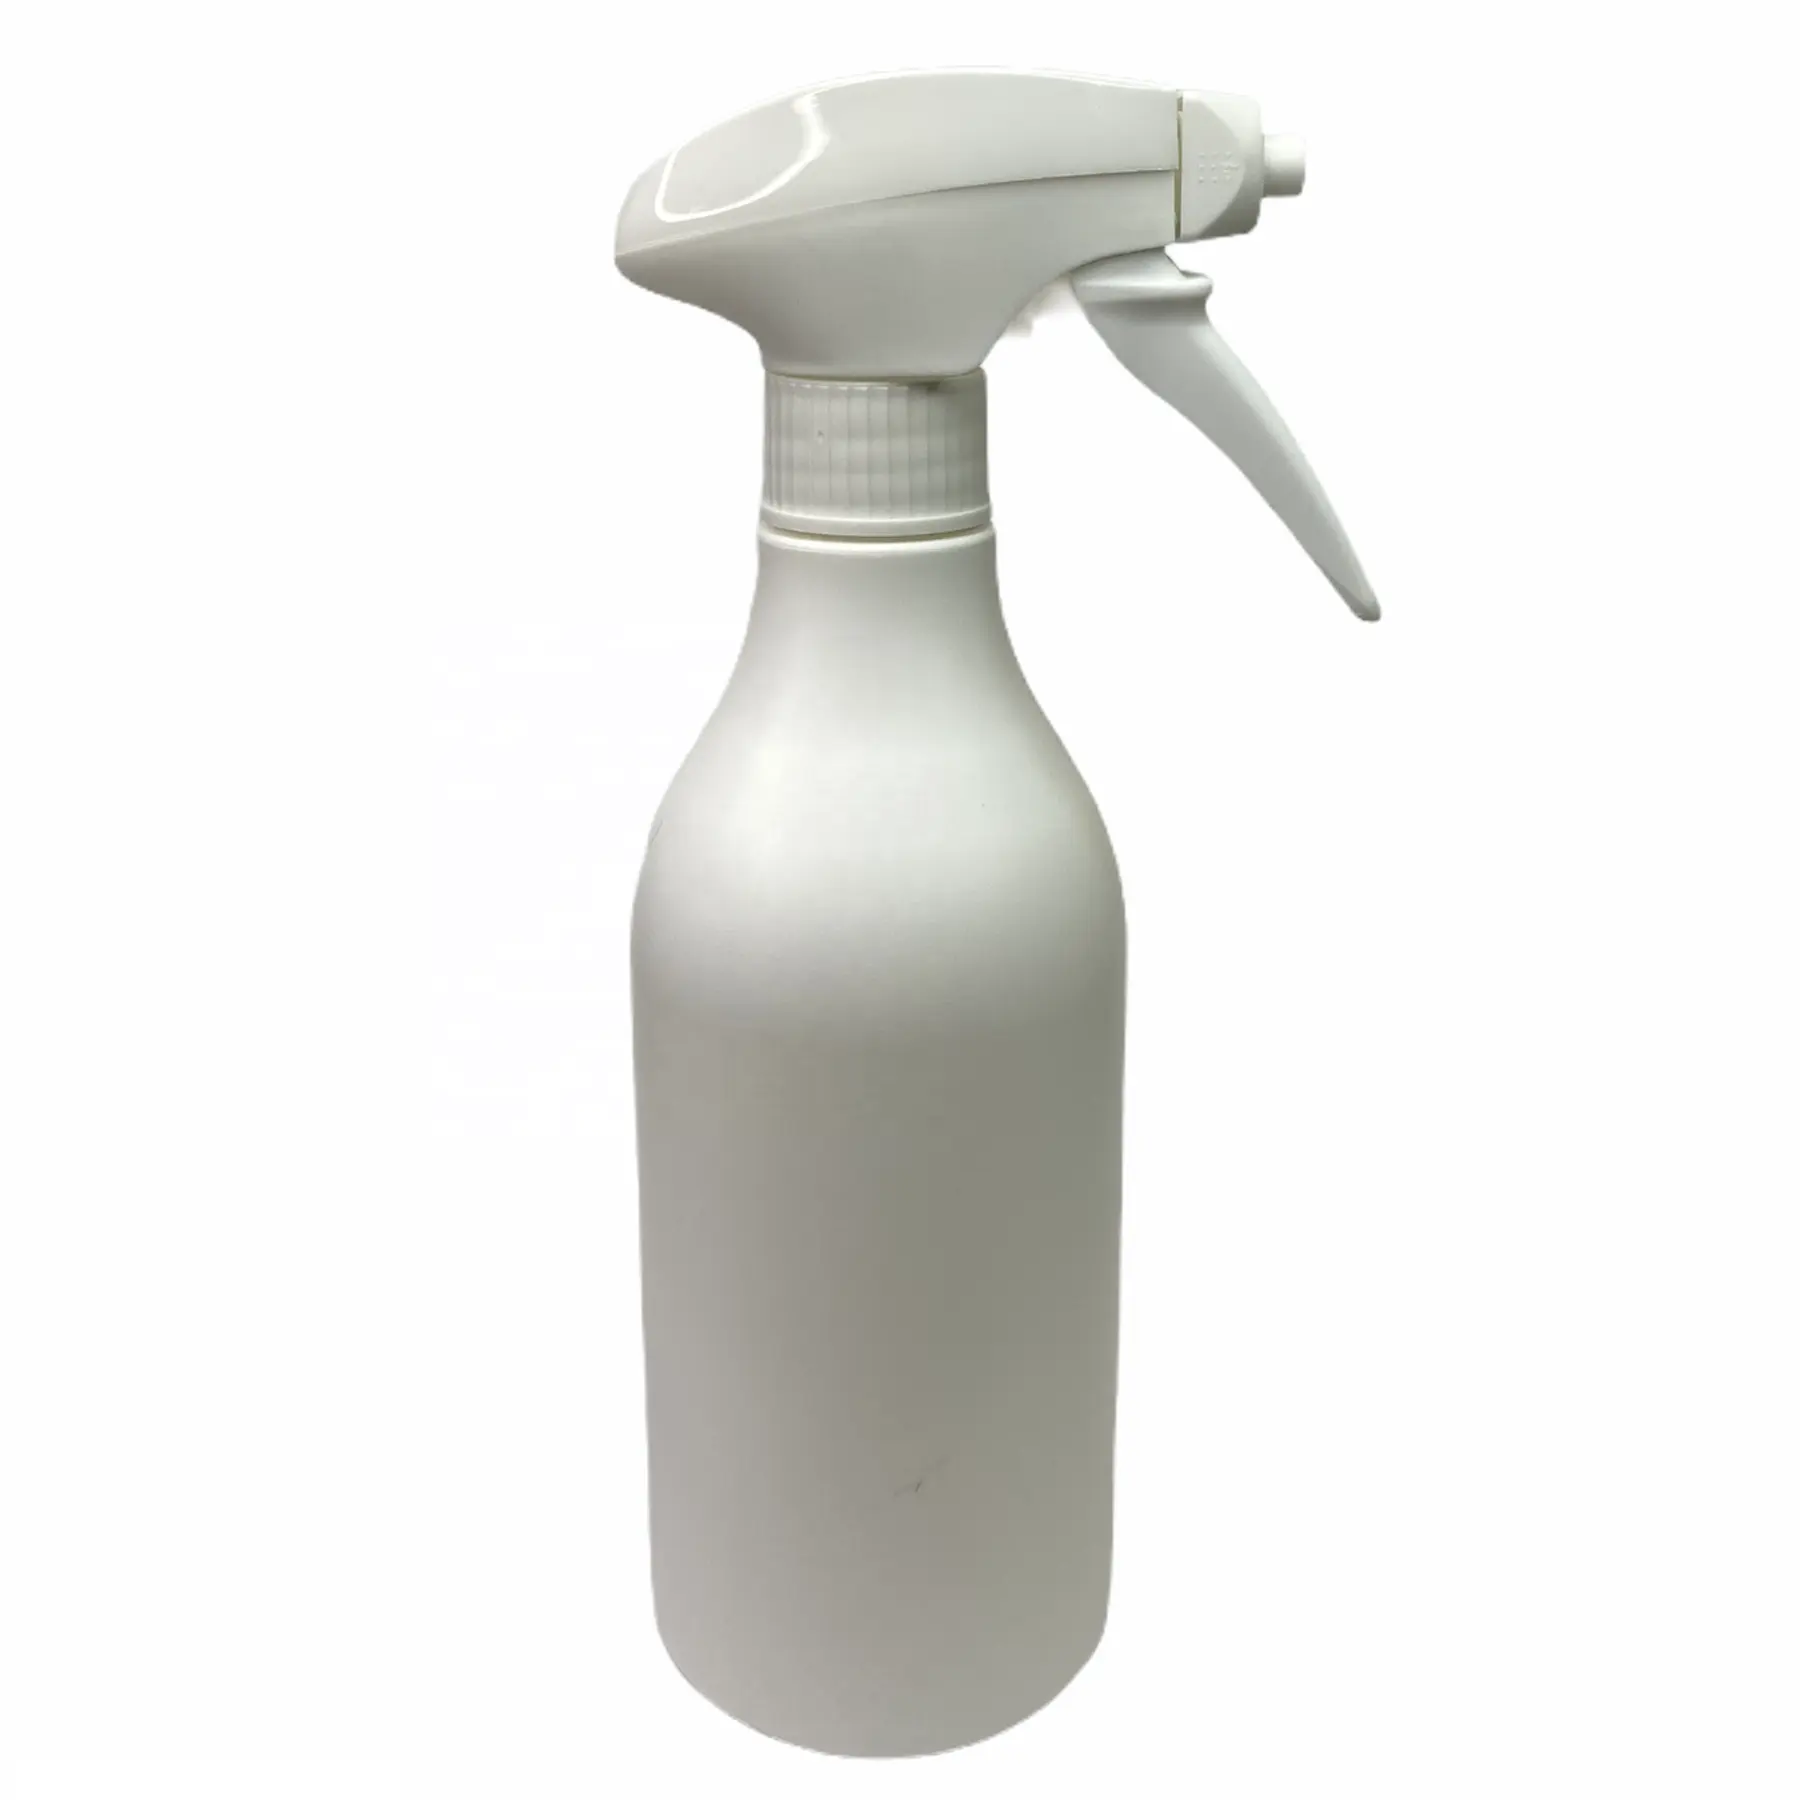 500 ml HDPE-Flasche mit hochwertigem Spray & Schaum 28/410 Trigger spender zur Desinfektion oder zum Waschmittel